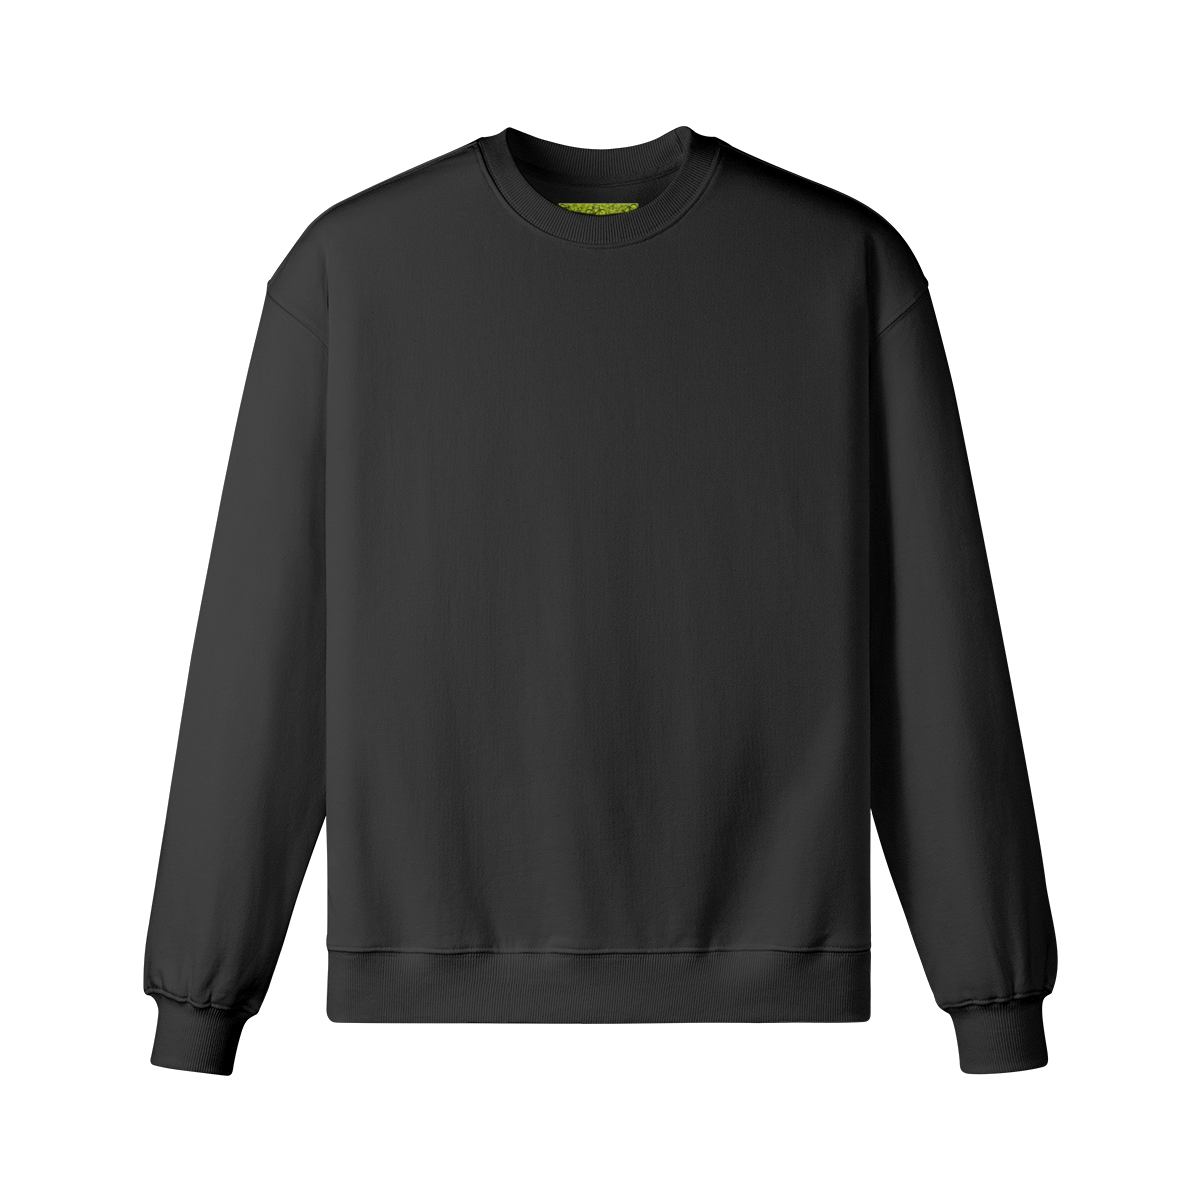 RAVEBOUND (BACK PRINT) - Unisex Oversized Sweatshirt